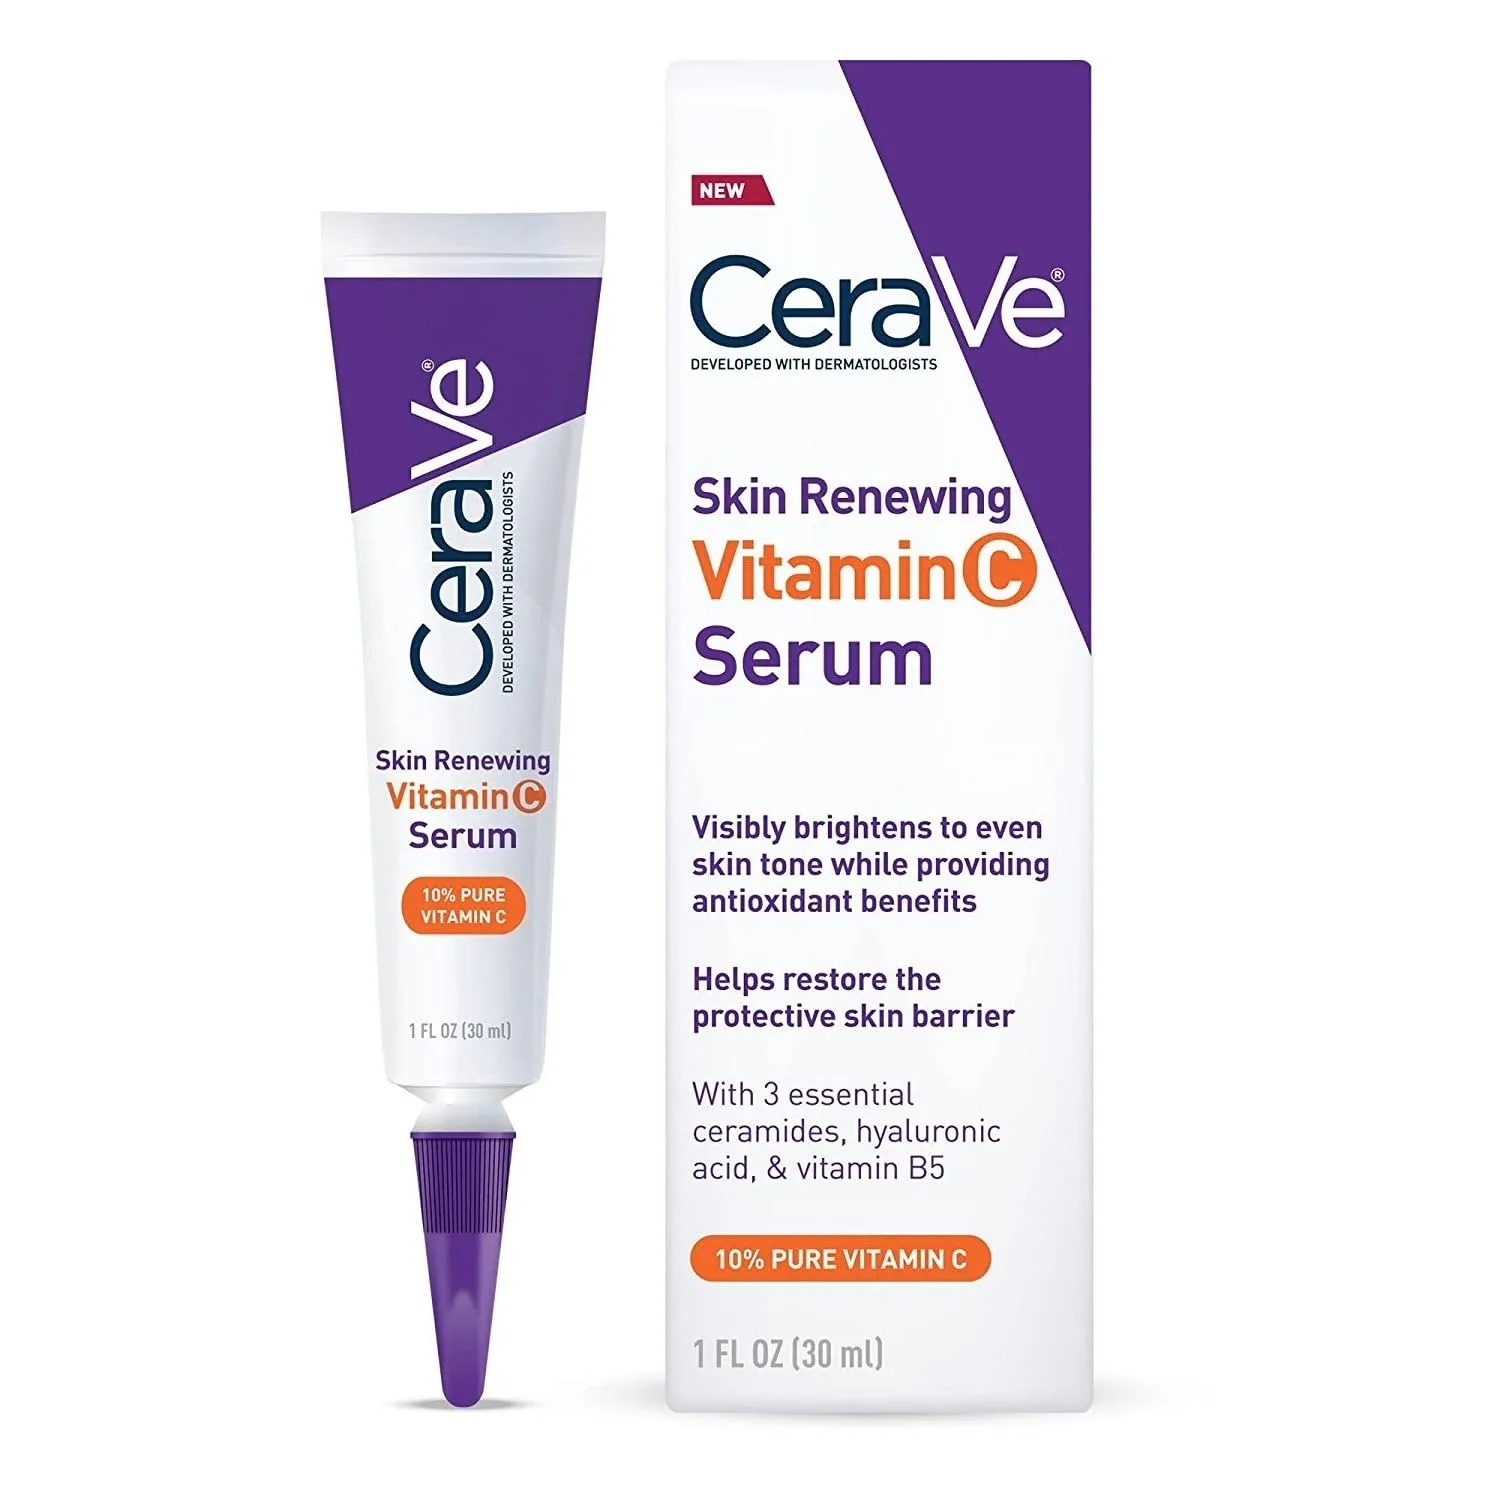 

CeraVe Skin Renewing Vitamin C Serum Anti-wrinkle And Aging Reduce Wrinkles Lines With Hyaluronic Acid Organic Repair Skin